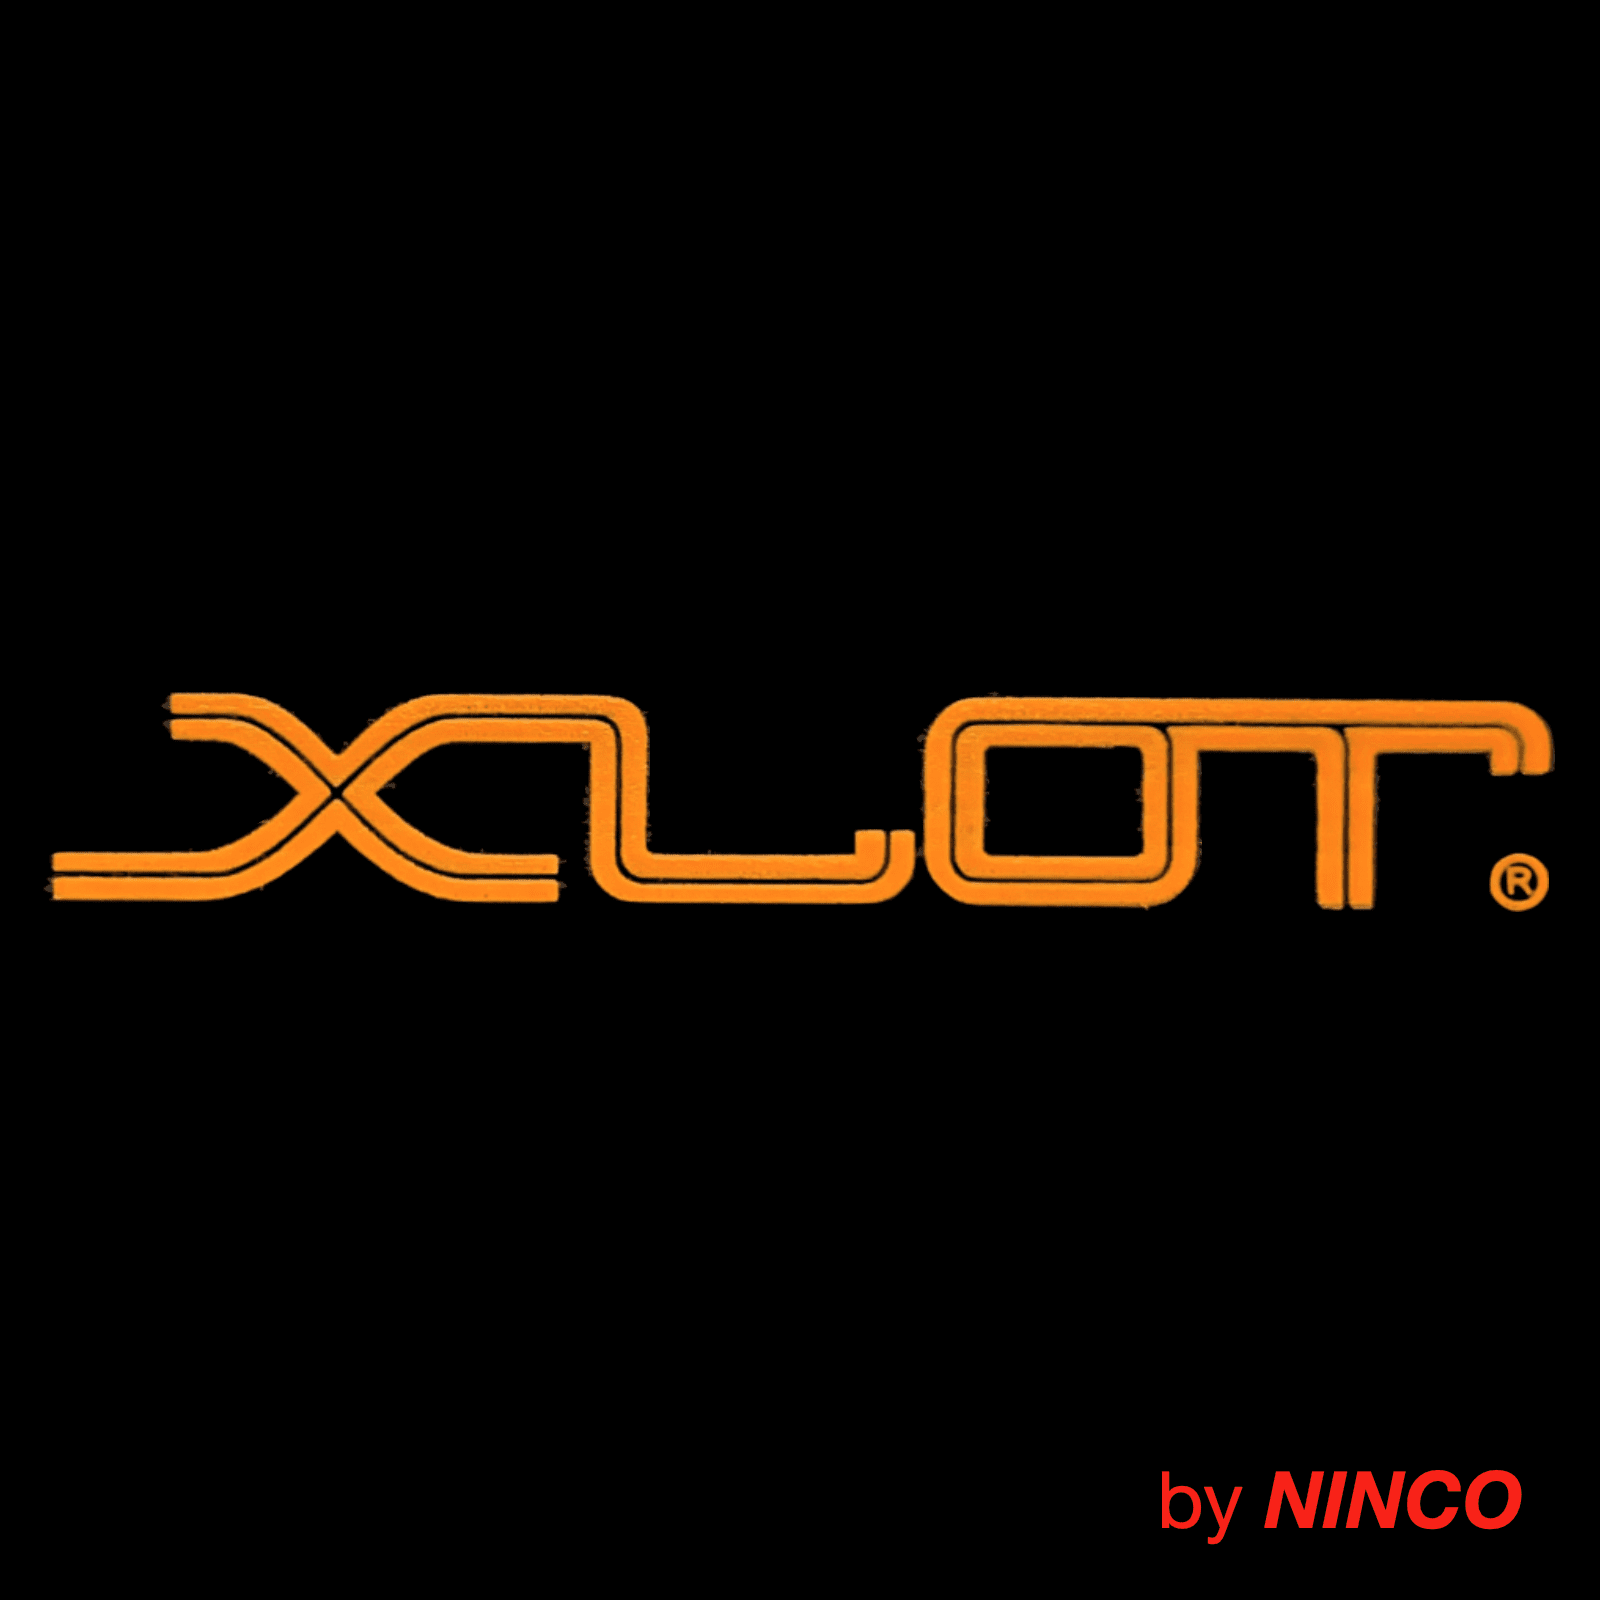 XLOT by NINCO - YAKOL